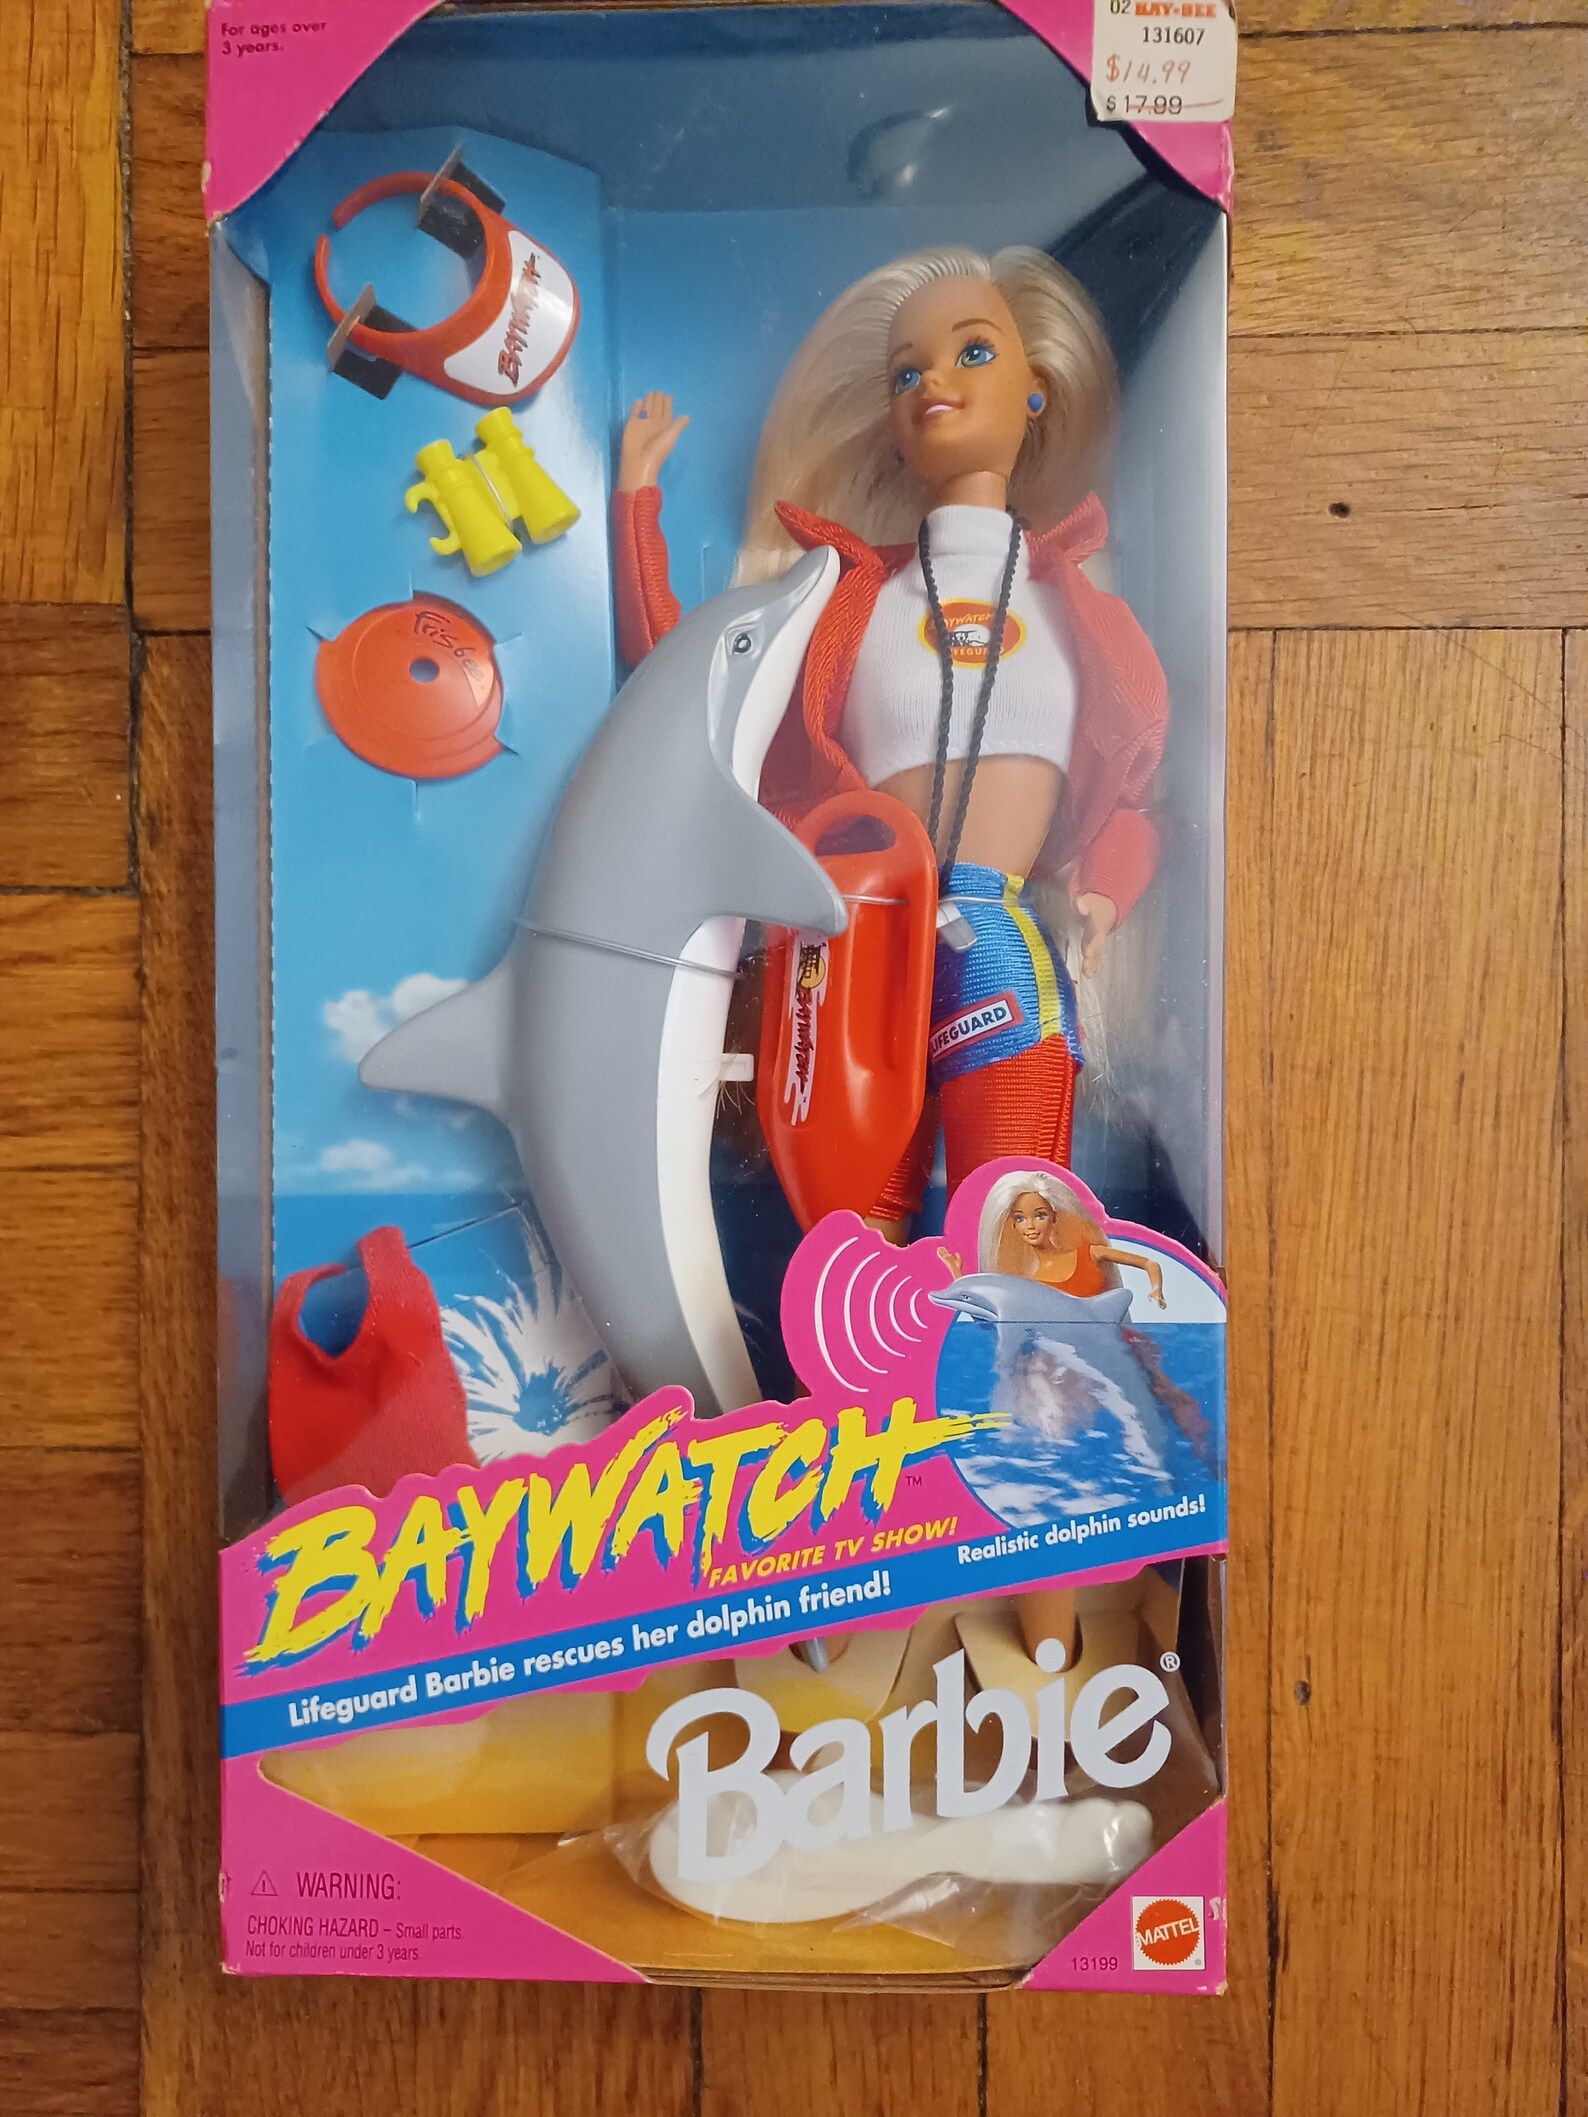 Give acceptabel græs Al quirófano por culpa de Barbie: la muñeca británica que tuvo que cambiar  de cara porque Mattel la demandó